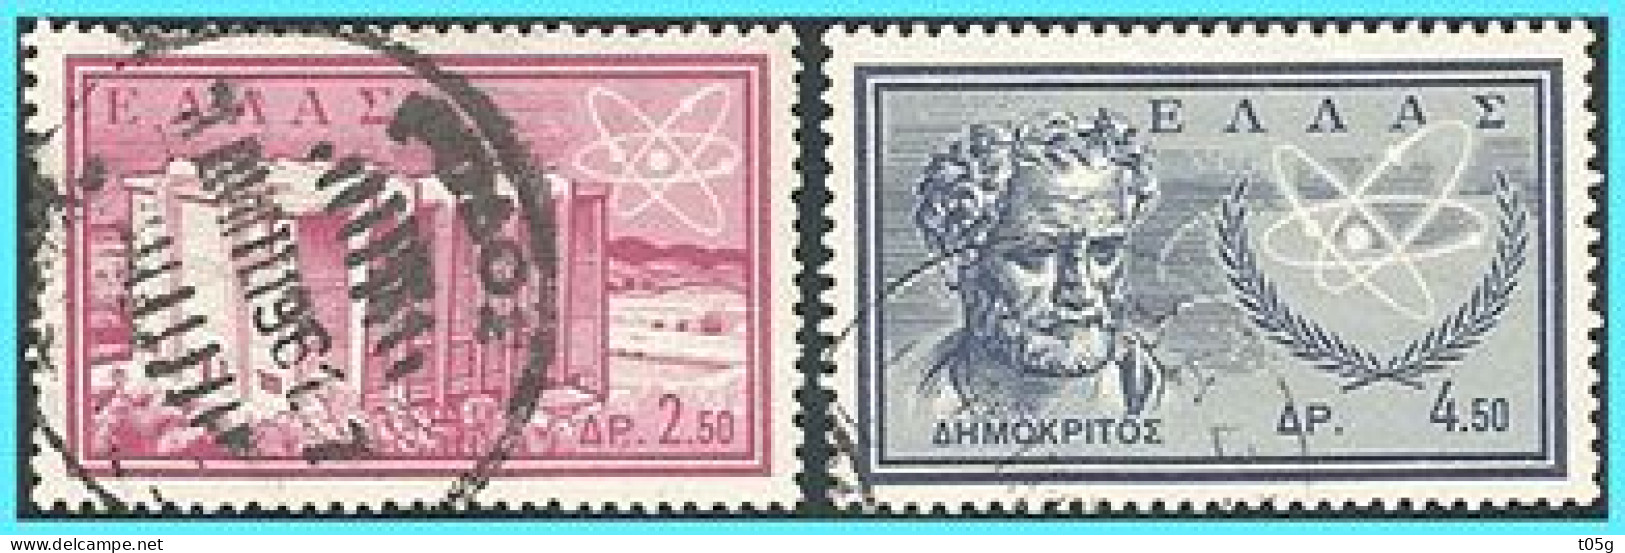 GREECE-GRECE- HELLAS 1961: "Democritus"  Compl. Set Used - Usados